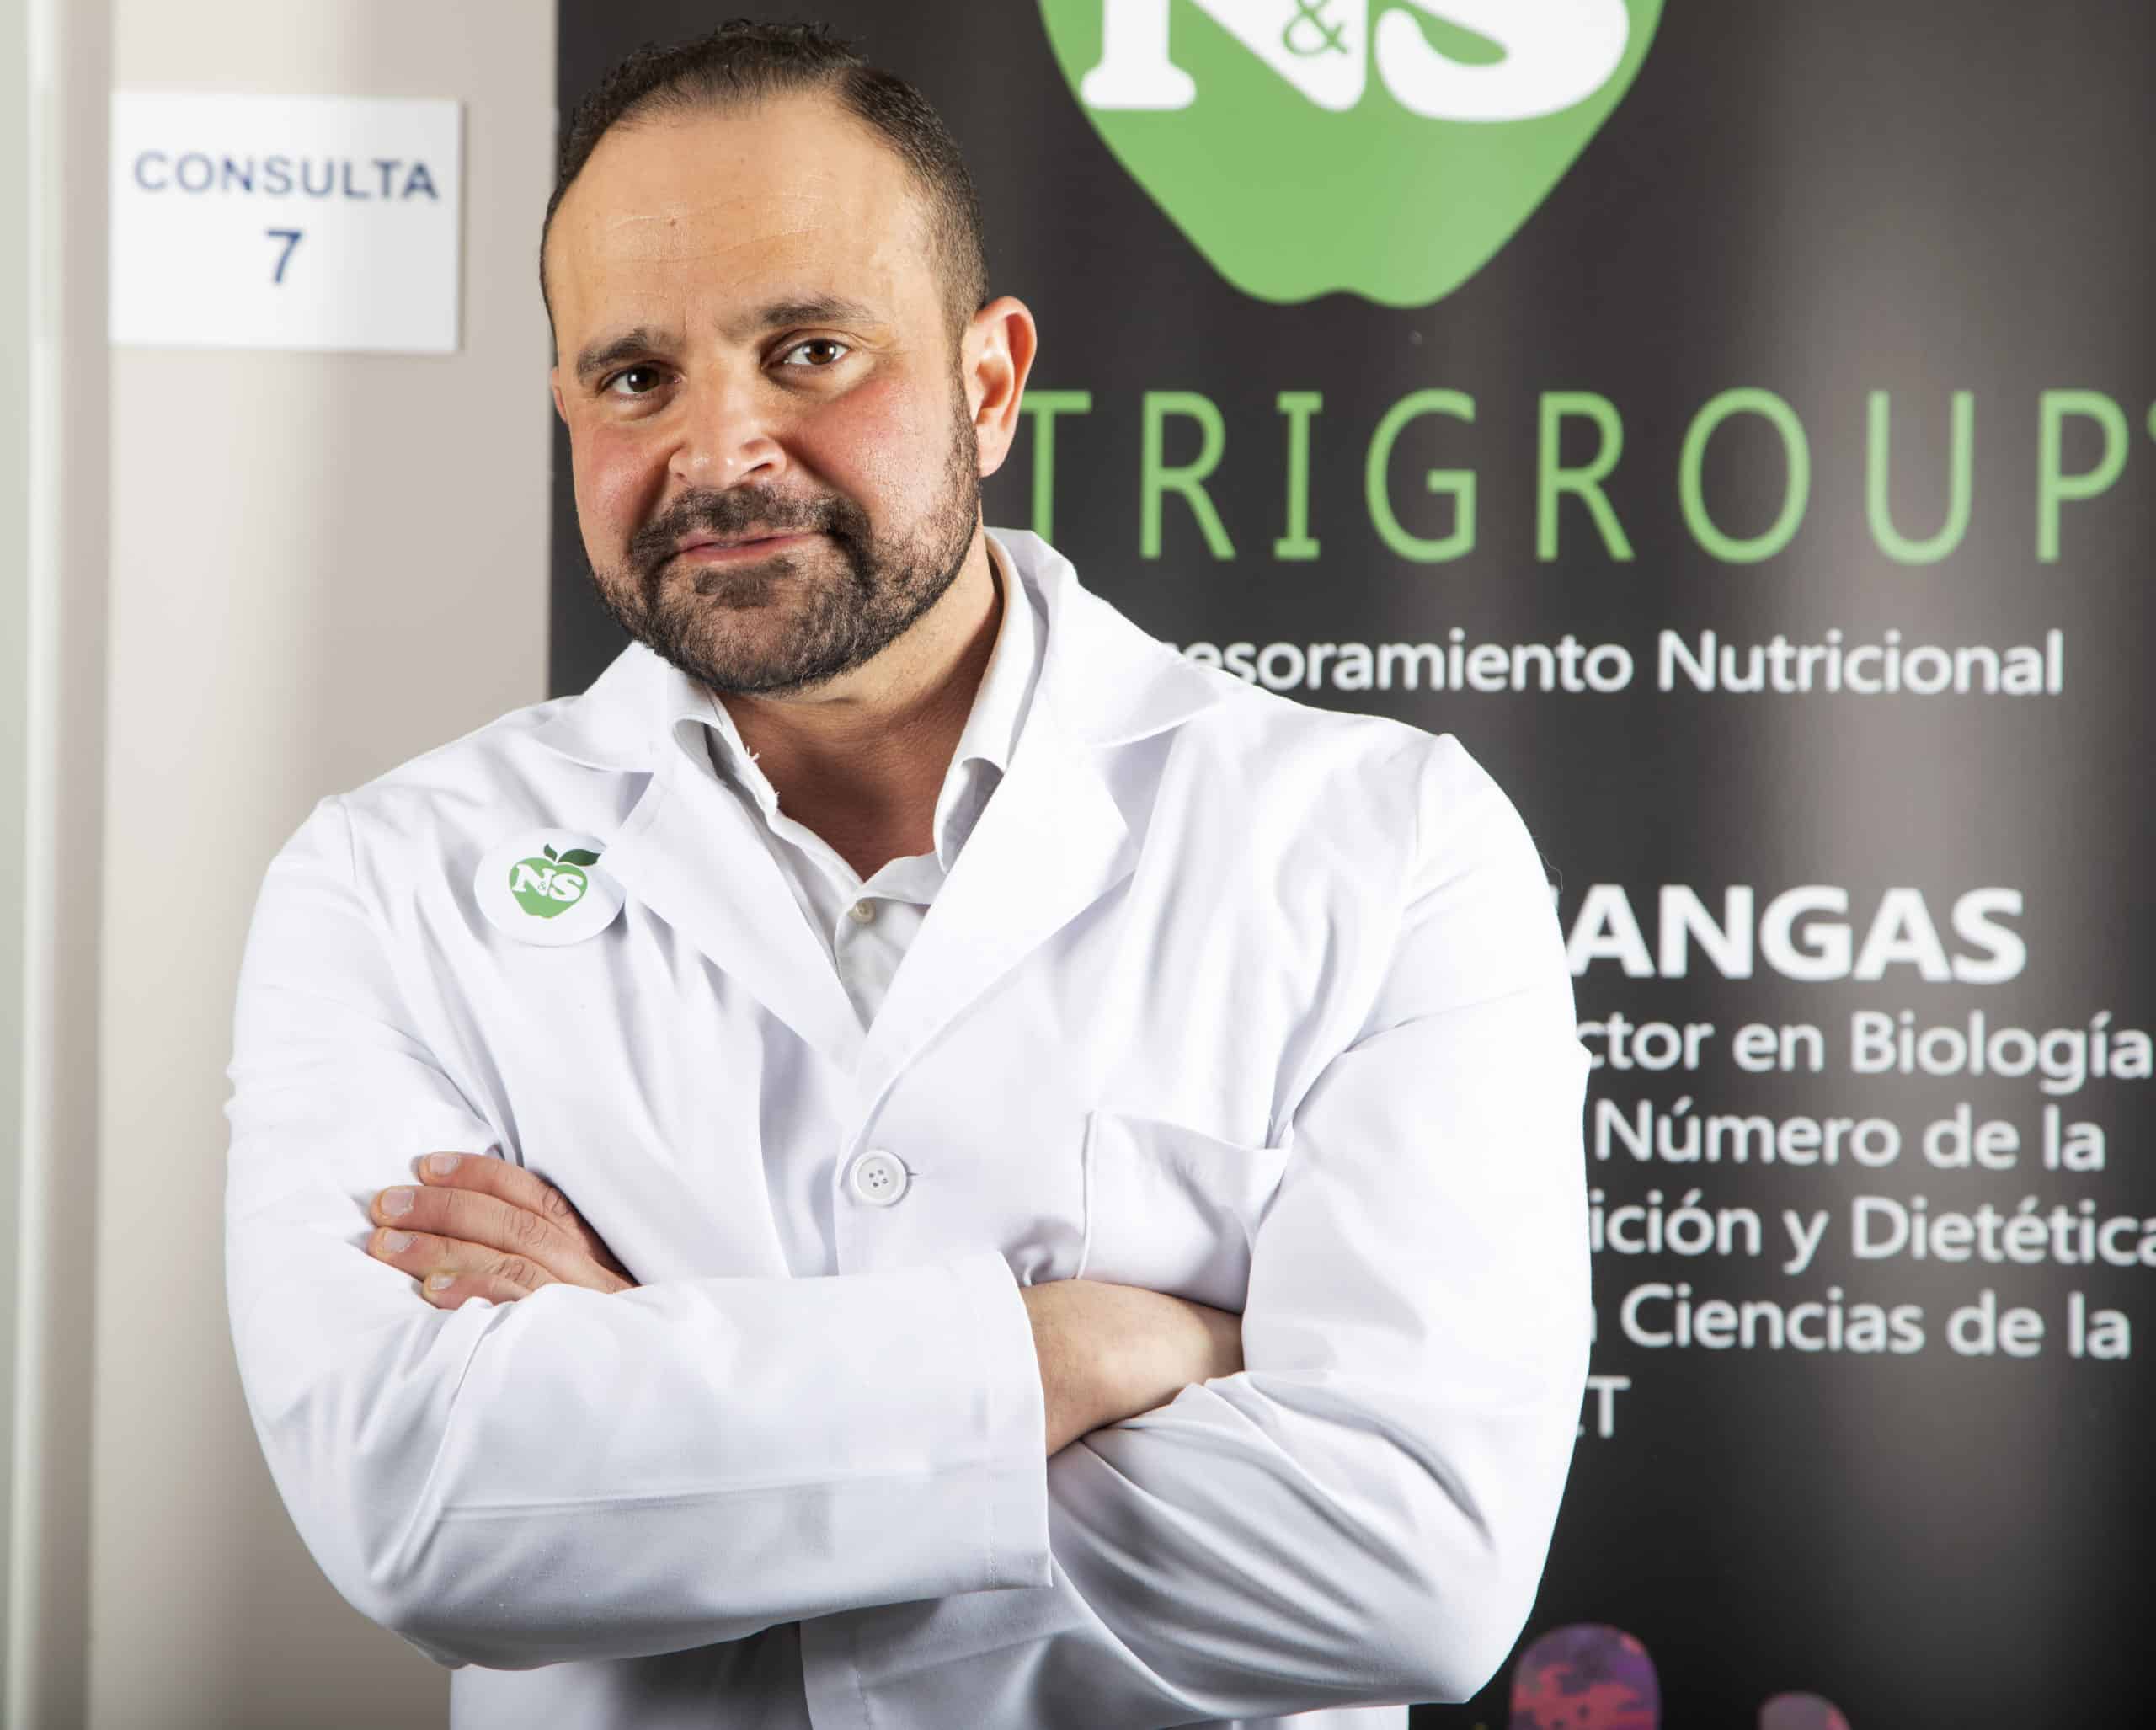 La microbiota y la alimentación consciente – Entrevista al nutricionista Ramón de Cangas